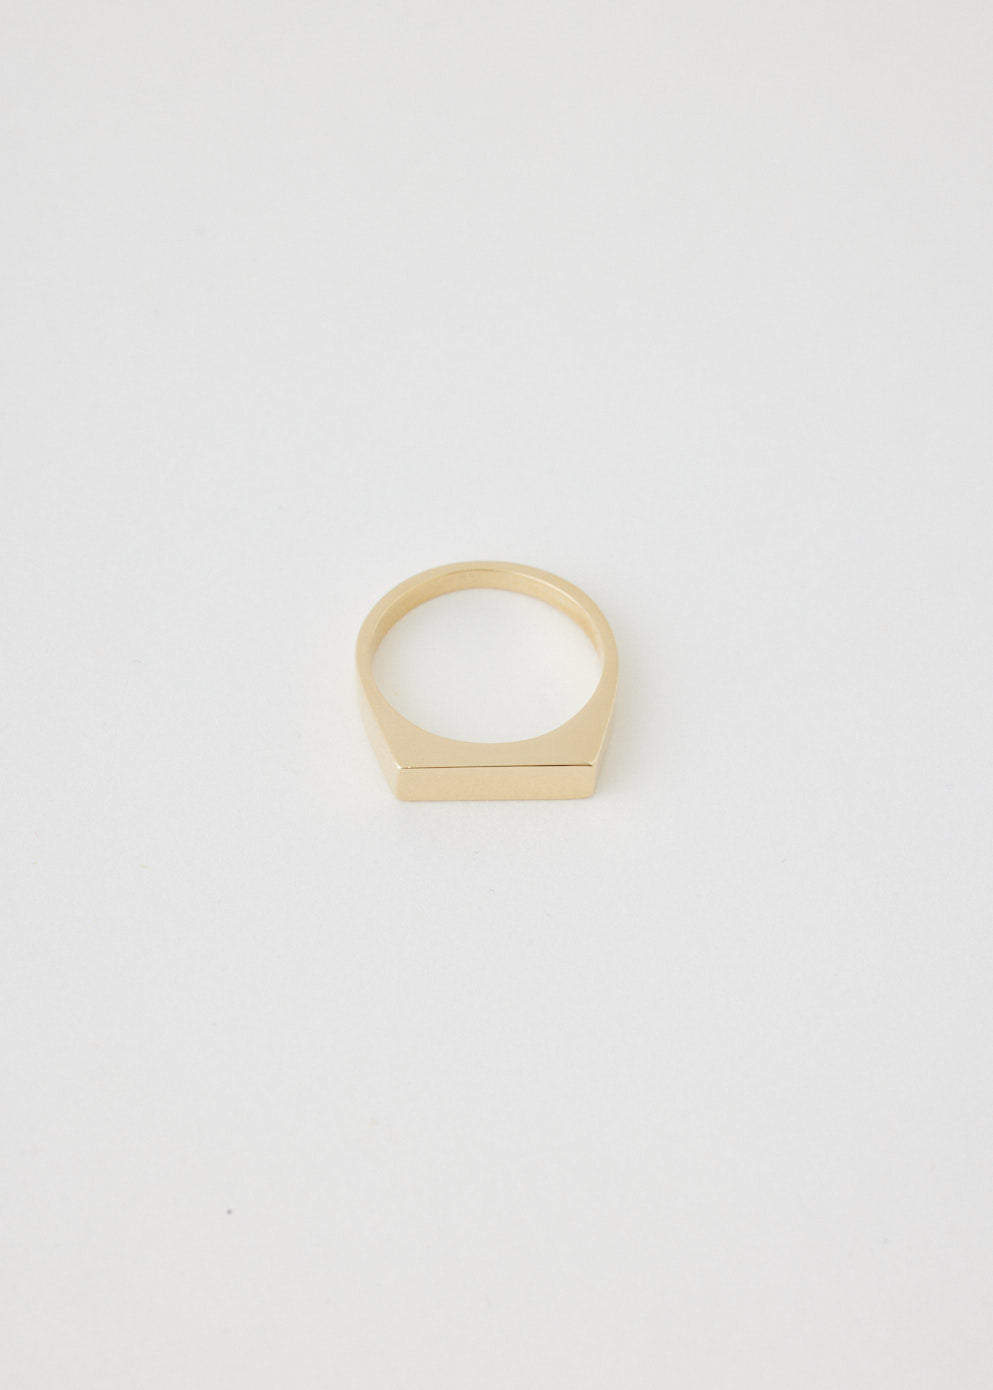 Type 002 Ring